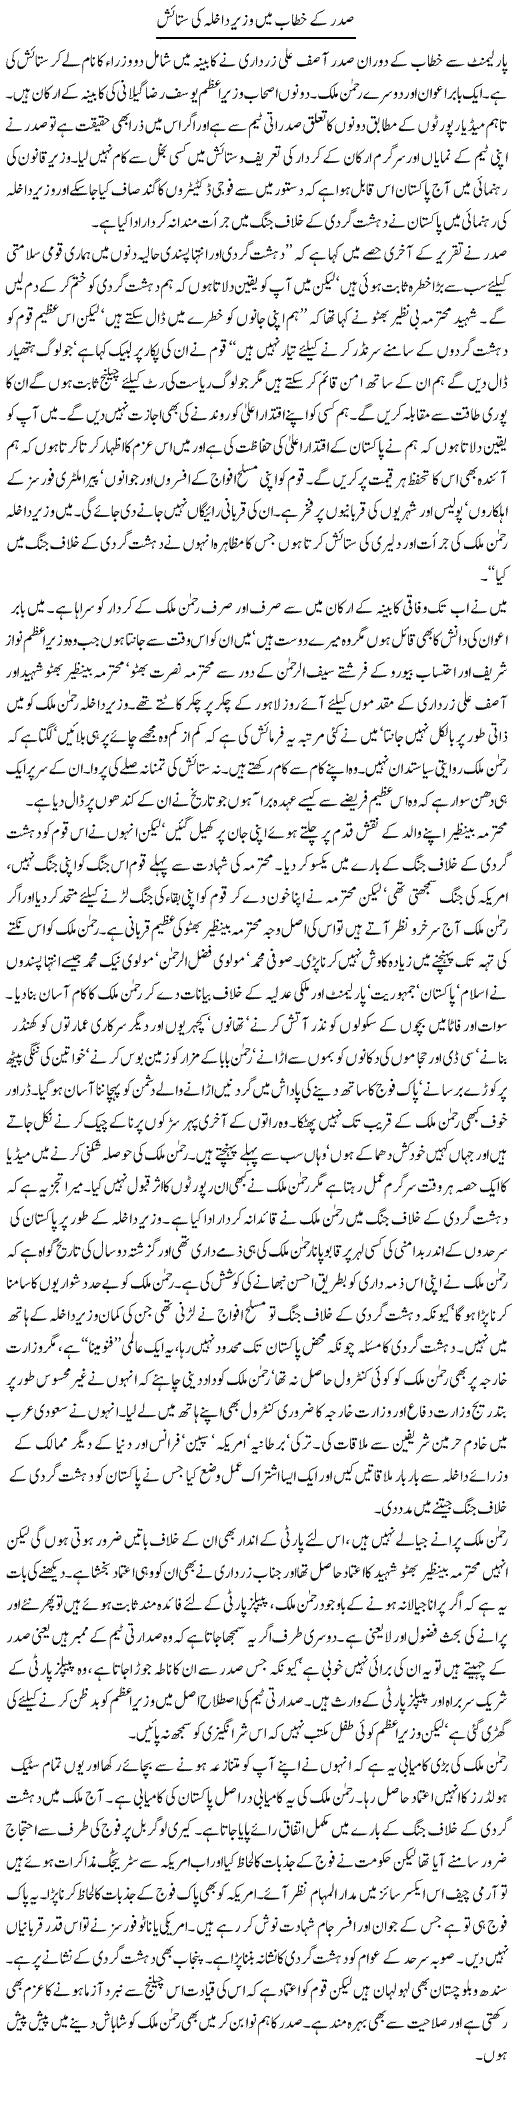 Rehman Malik ki sataish Express Column Asadullah Galib 7 April 2010